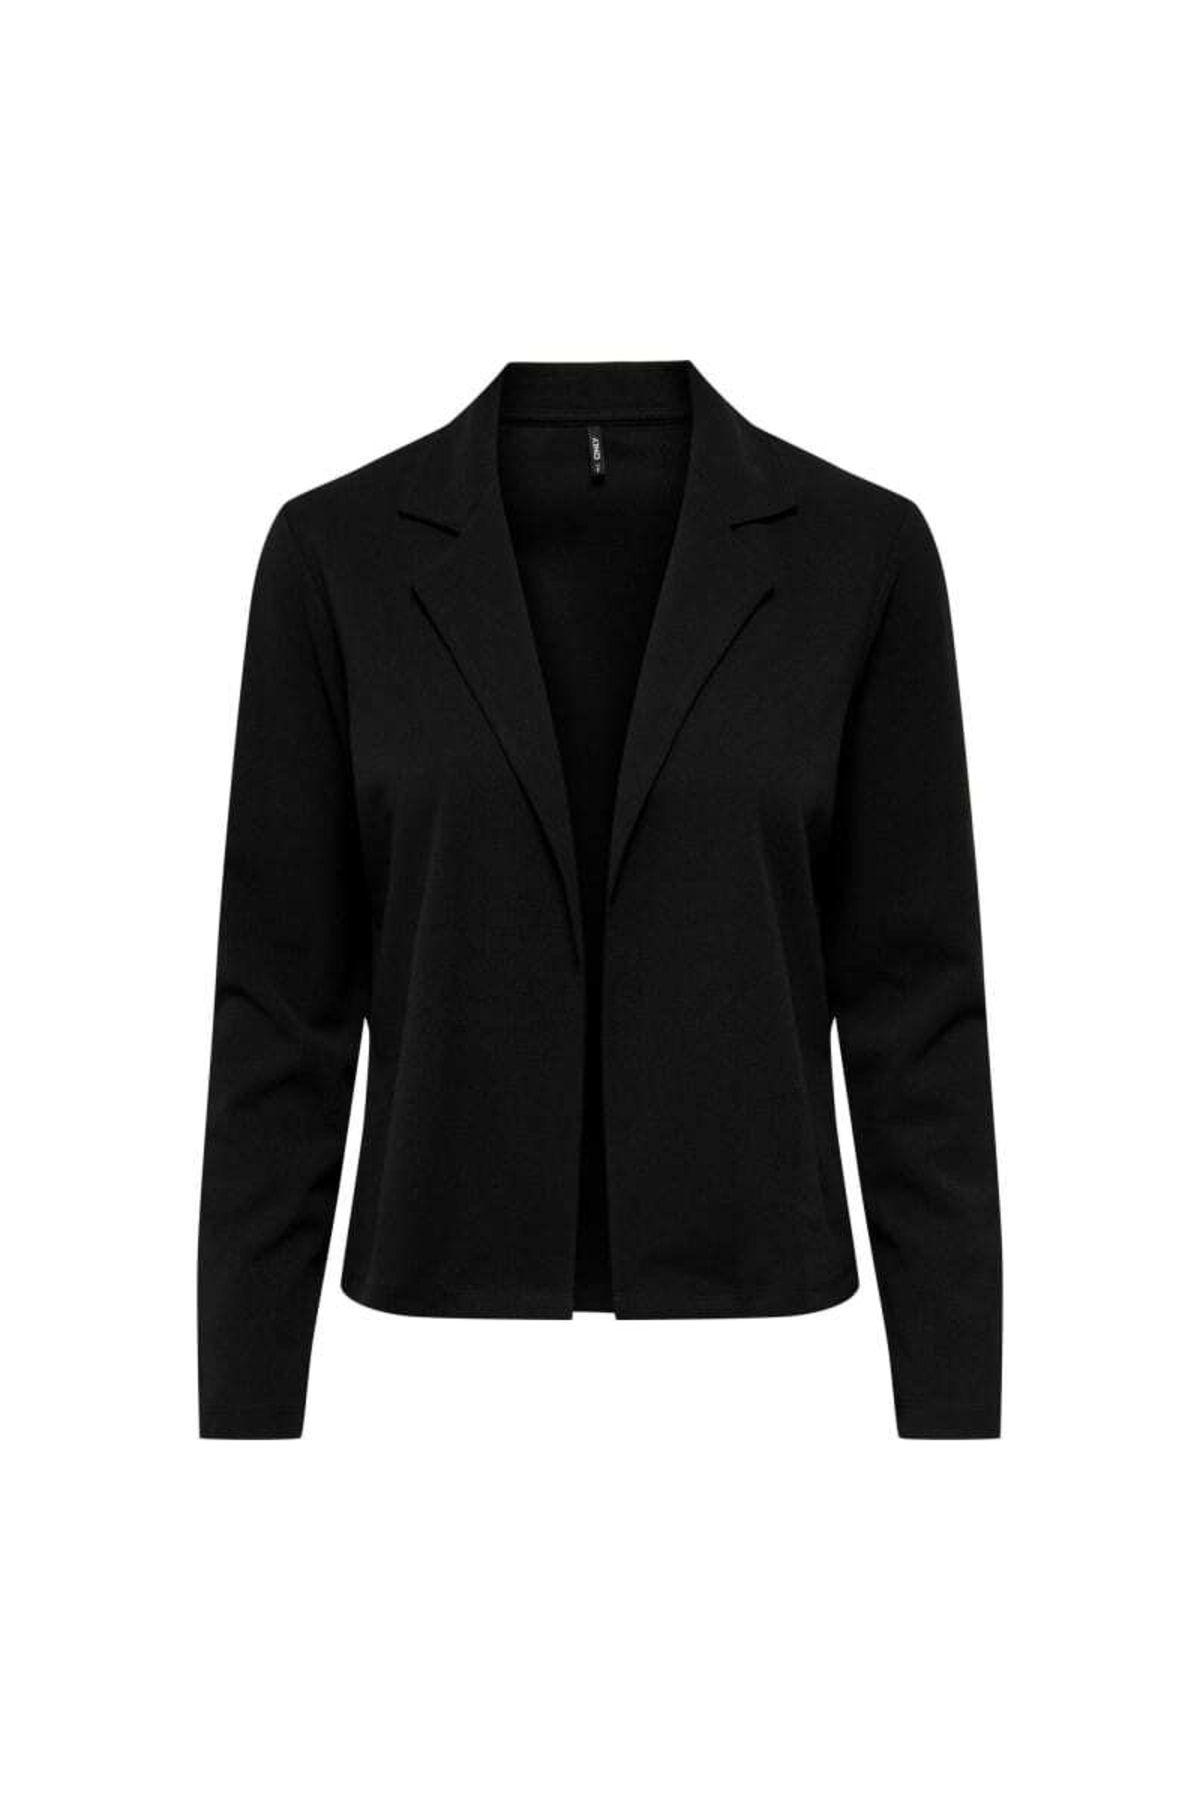 Only Kadın Blazer Ceket